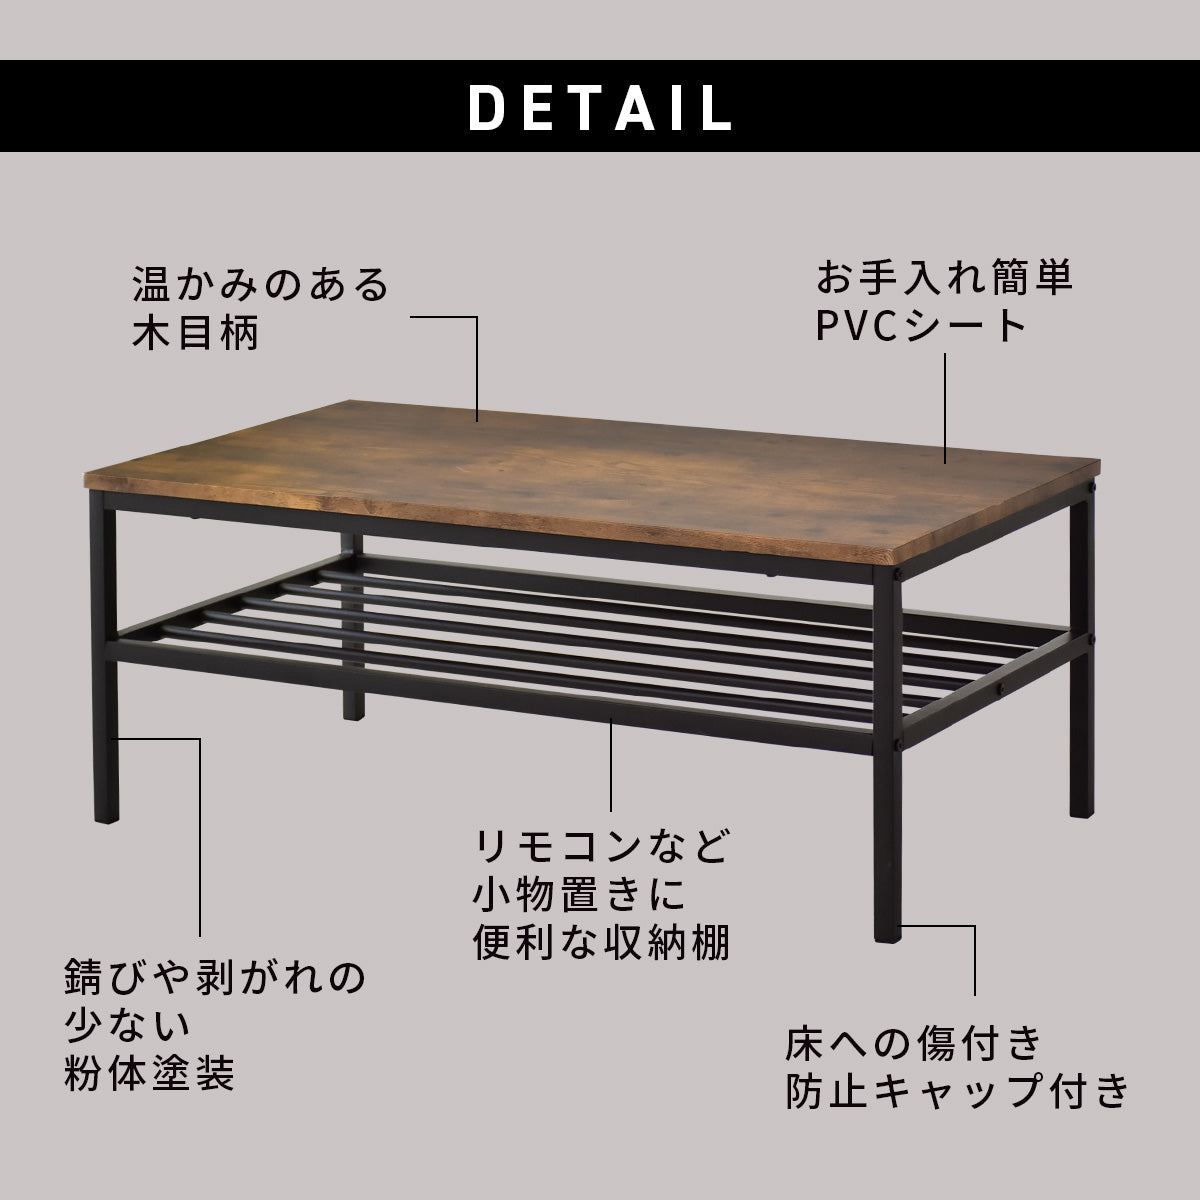 [幅90] センターテーブル ローテーブル テーブル 収納棚 木製天板 アイアンフレーム マルタ